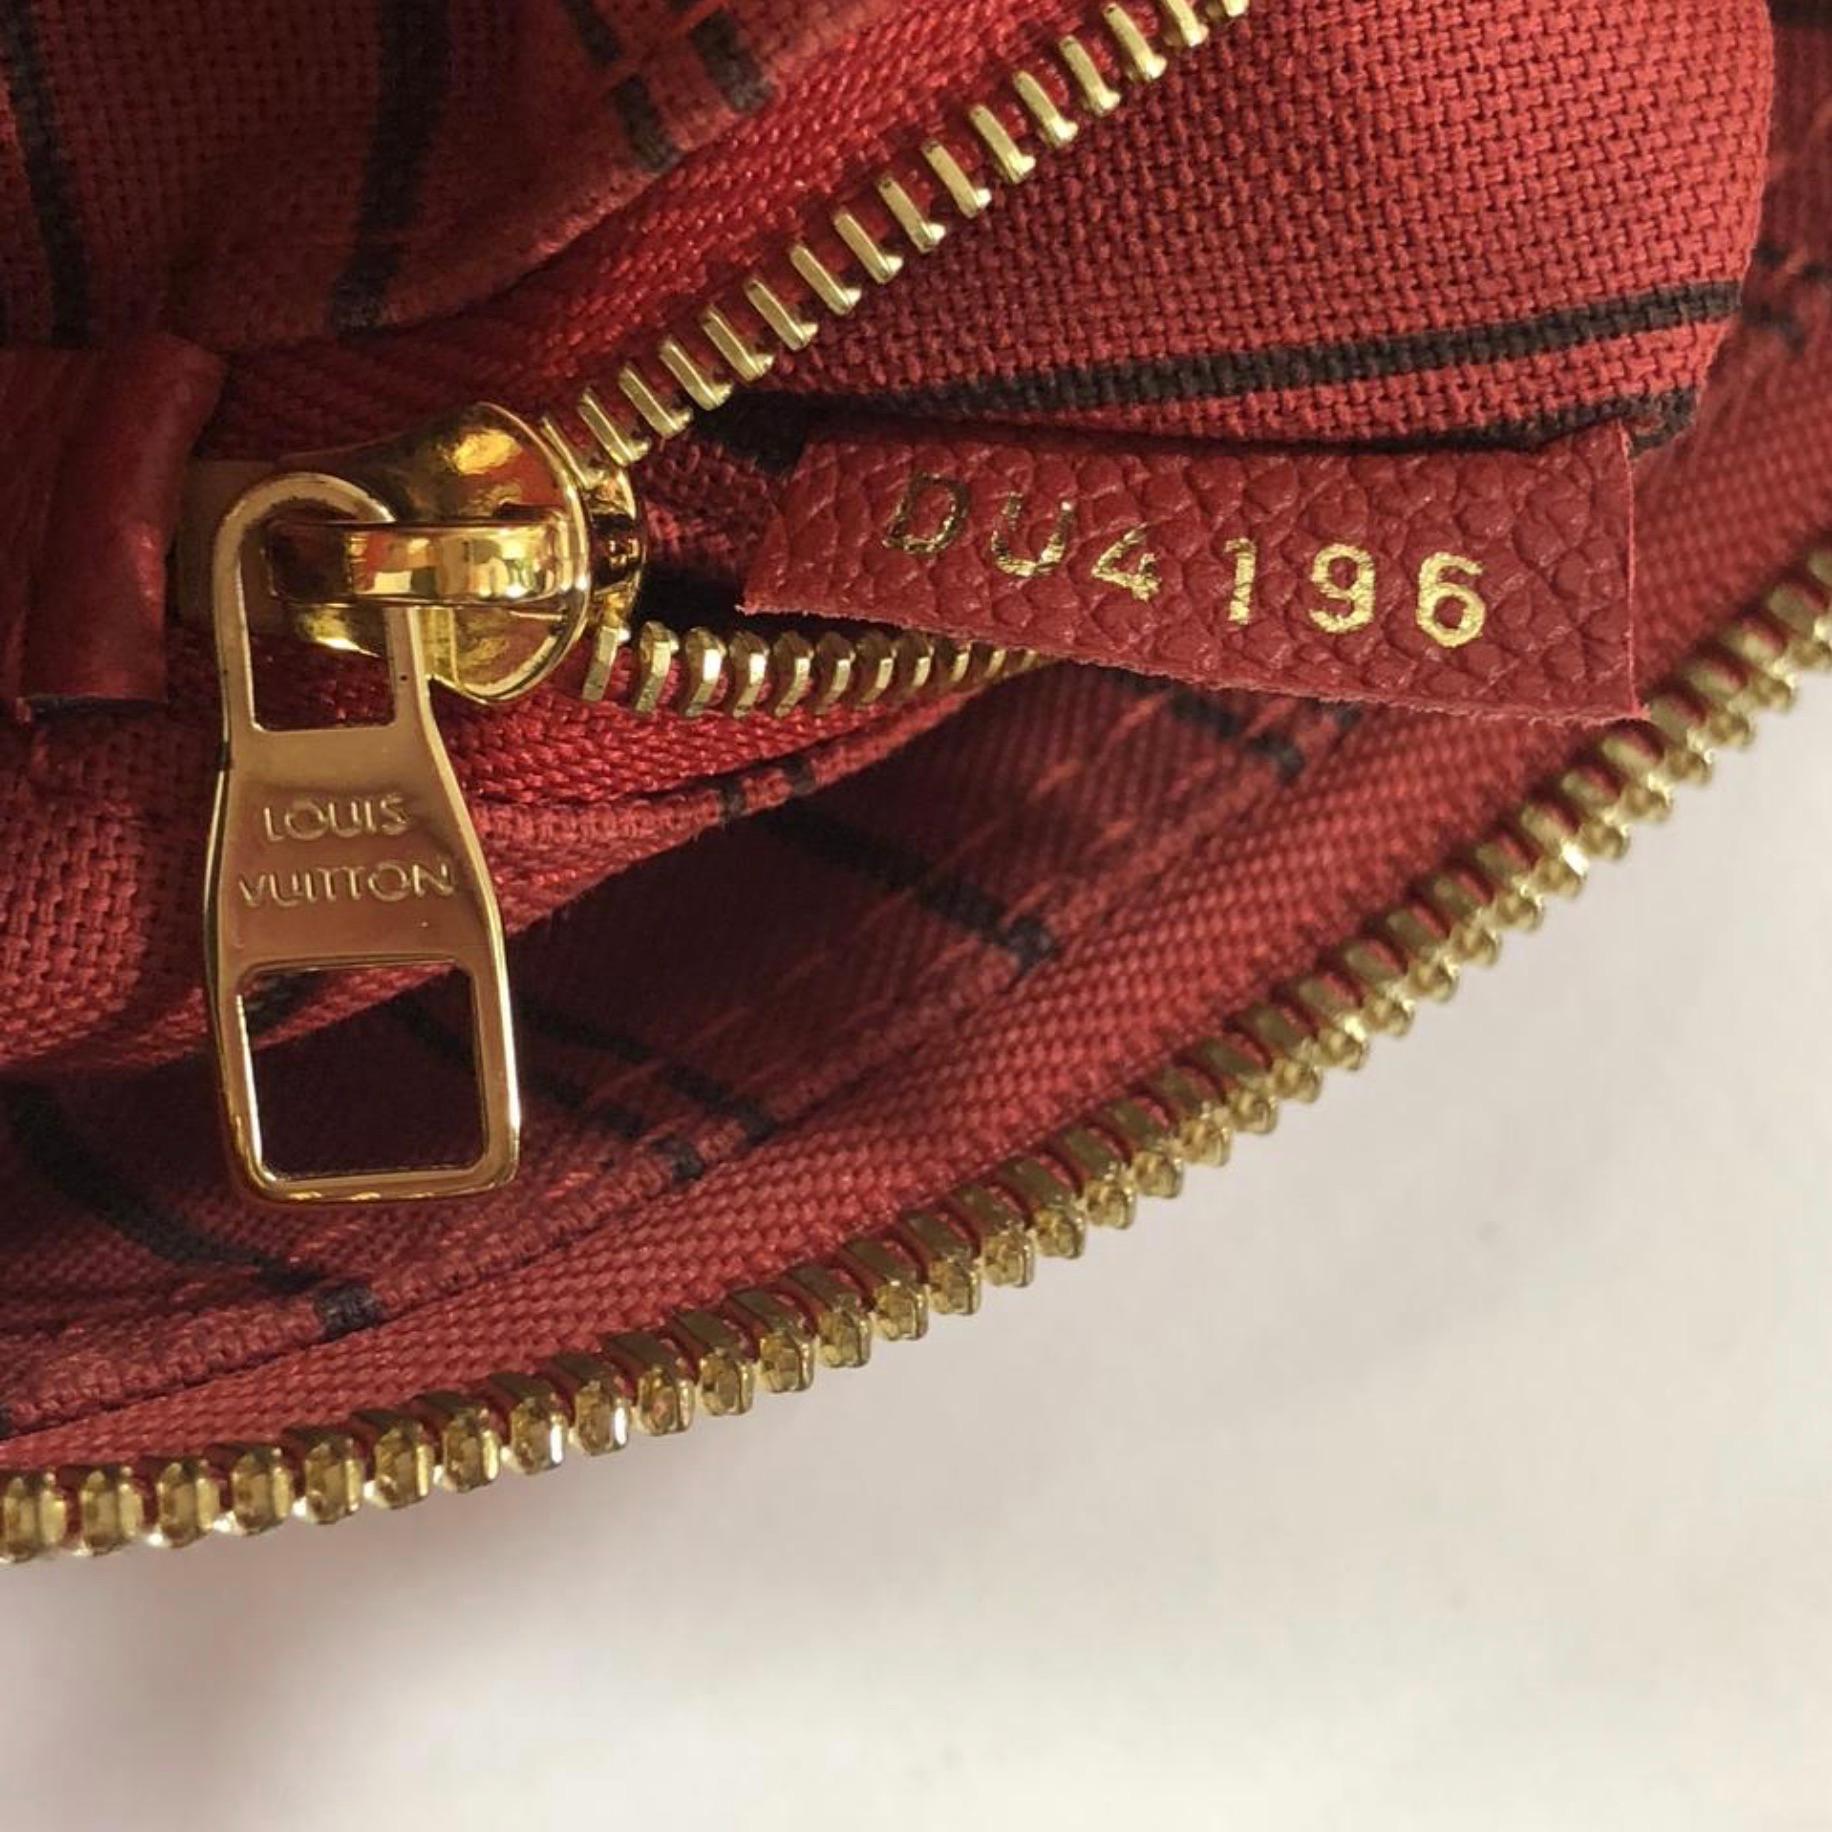 Louis Vuitton Empreinte Speedy 25 in Red Satchel Handbag For Sale 7